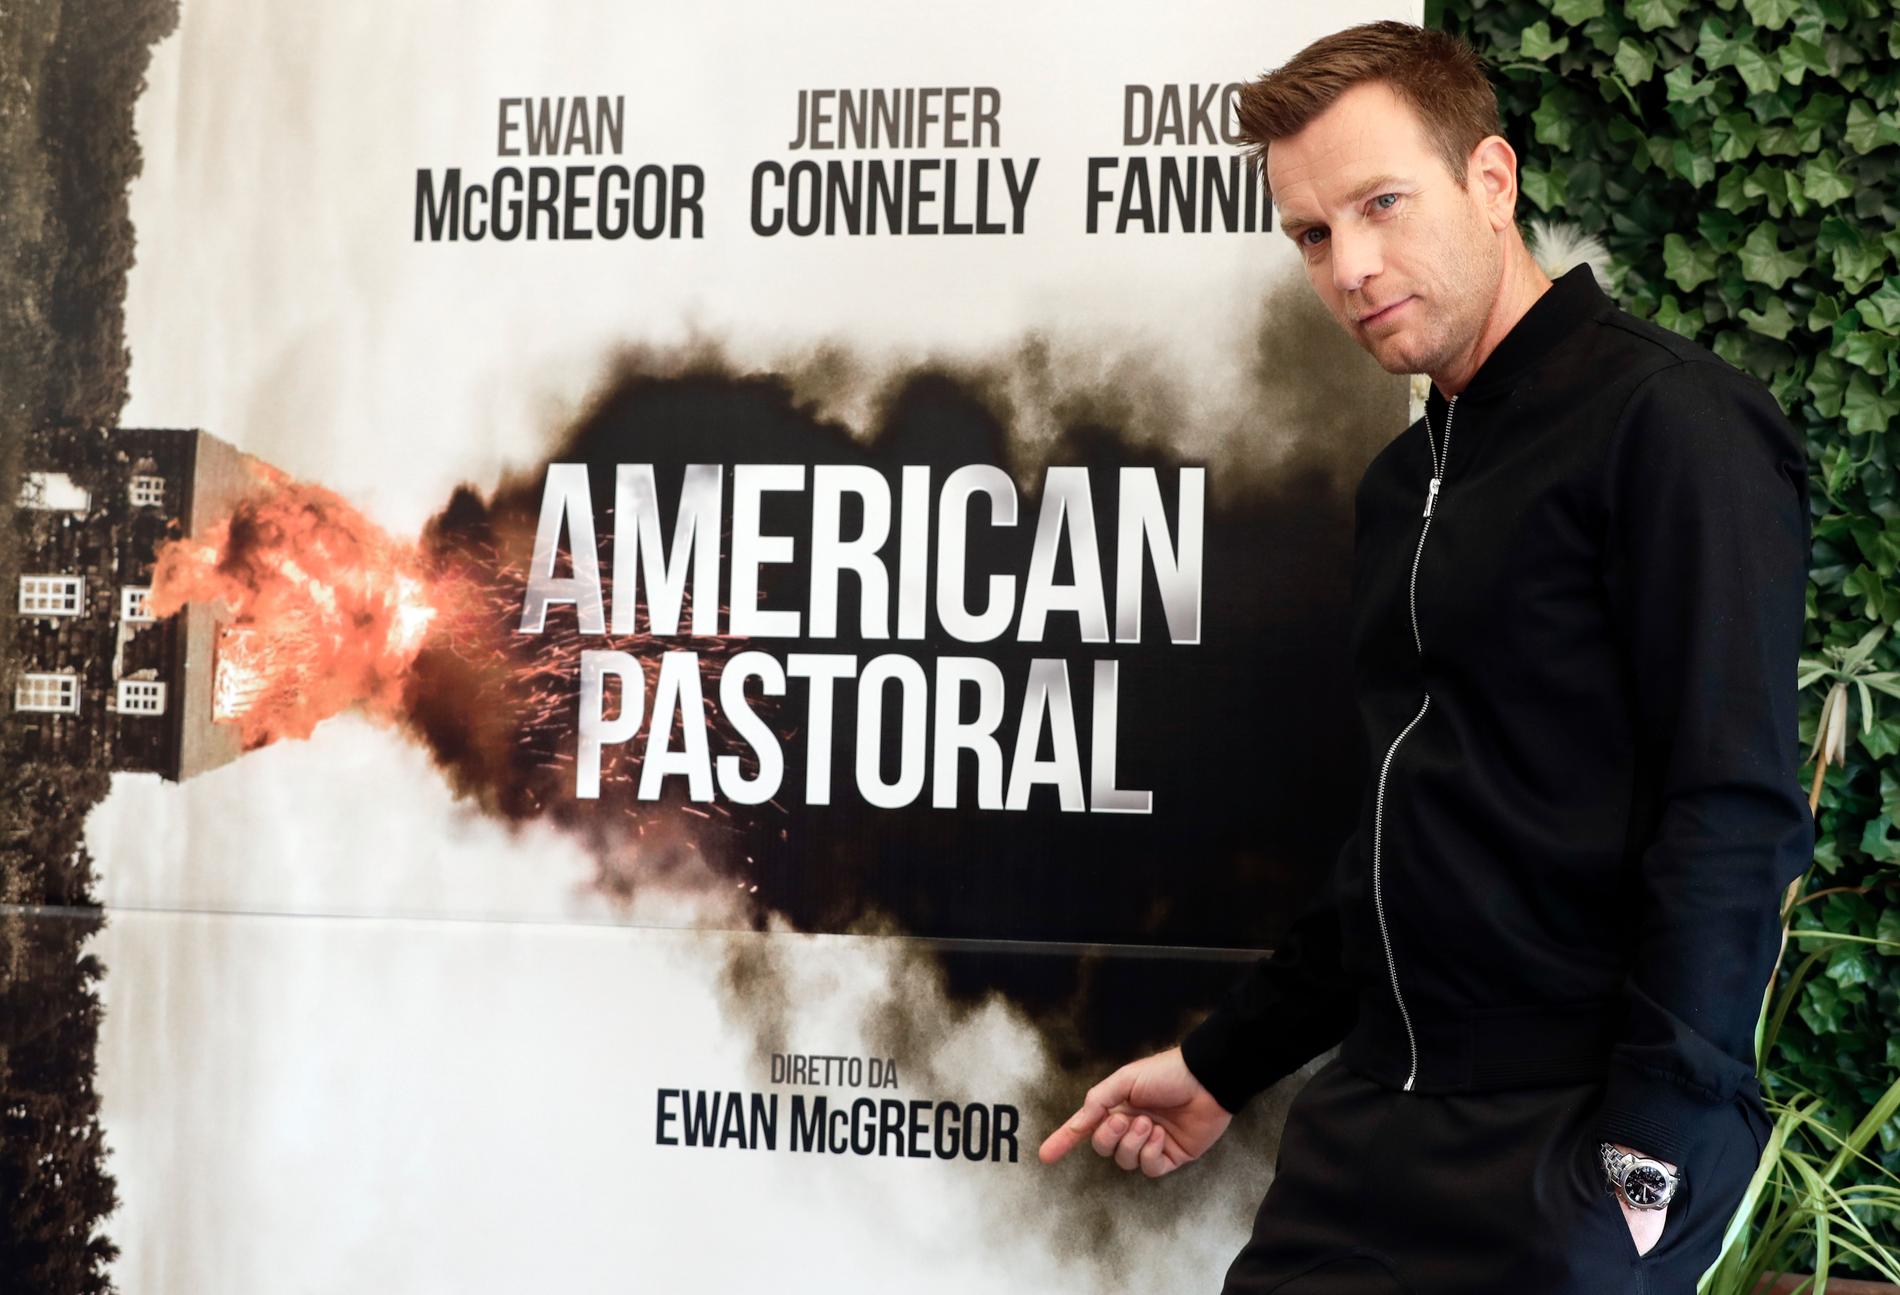 Ewan regisserar och spelar huvudrollen i nya filmen ”American pastoral”.